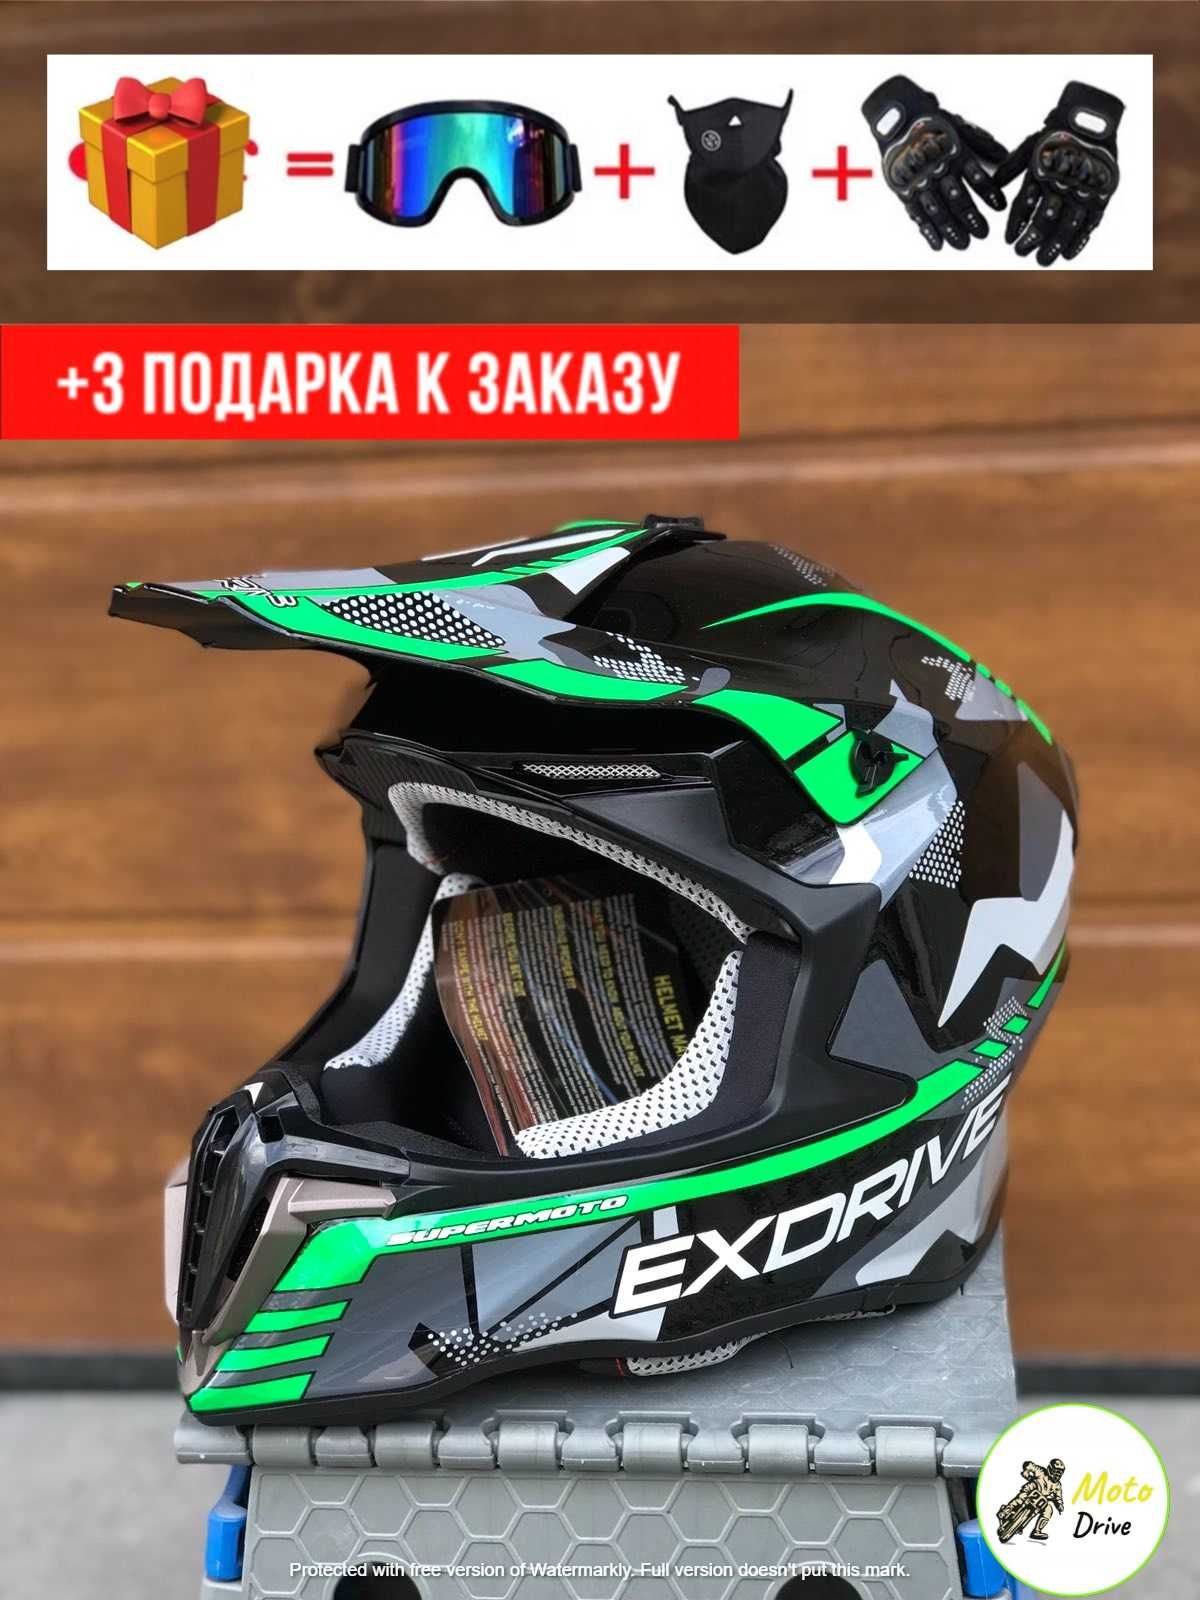 Мото Кроссовый шлем,фул фейс+3 подарки Очки+Перчатки+Балаклава